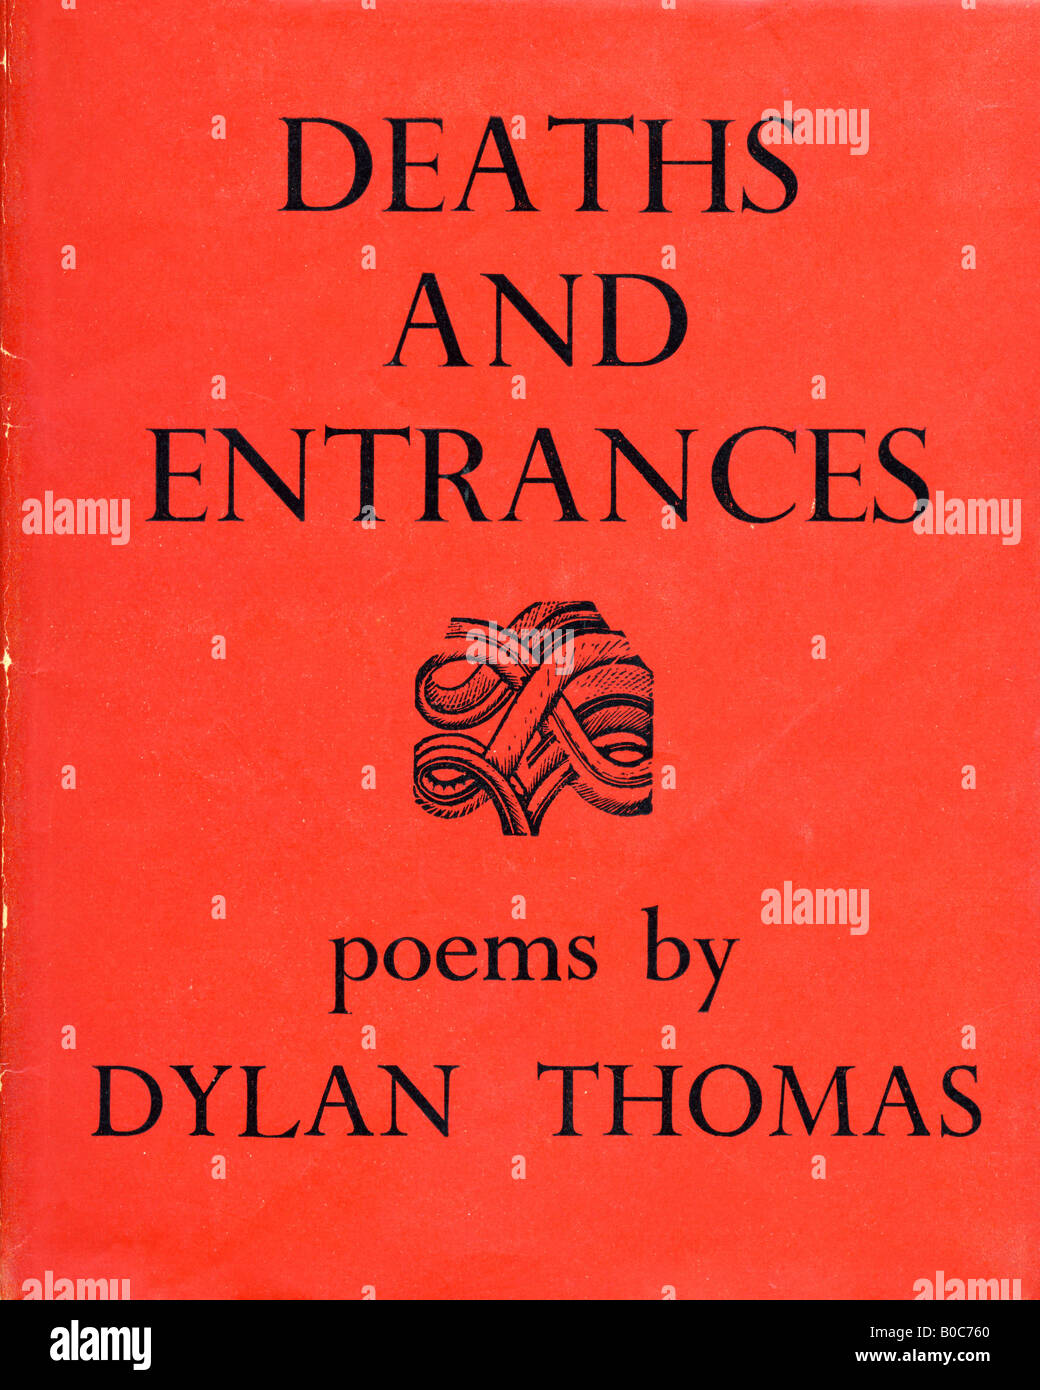 Muertes y entradas poemas de Dylan Thomas libro de tapa dura con cubierta publicada por Dent & Sons de Londres 1946 SÓLO PARA USO EDITORIAL Foto de stock